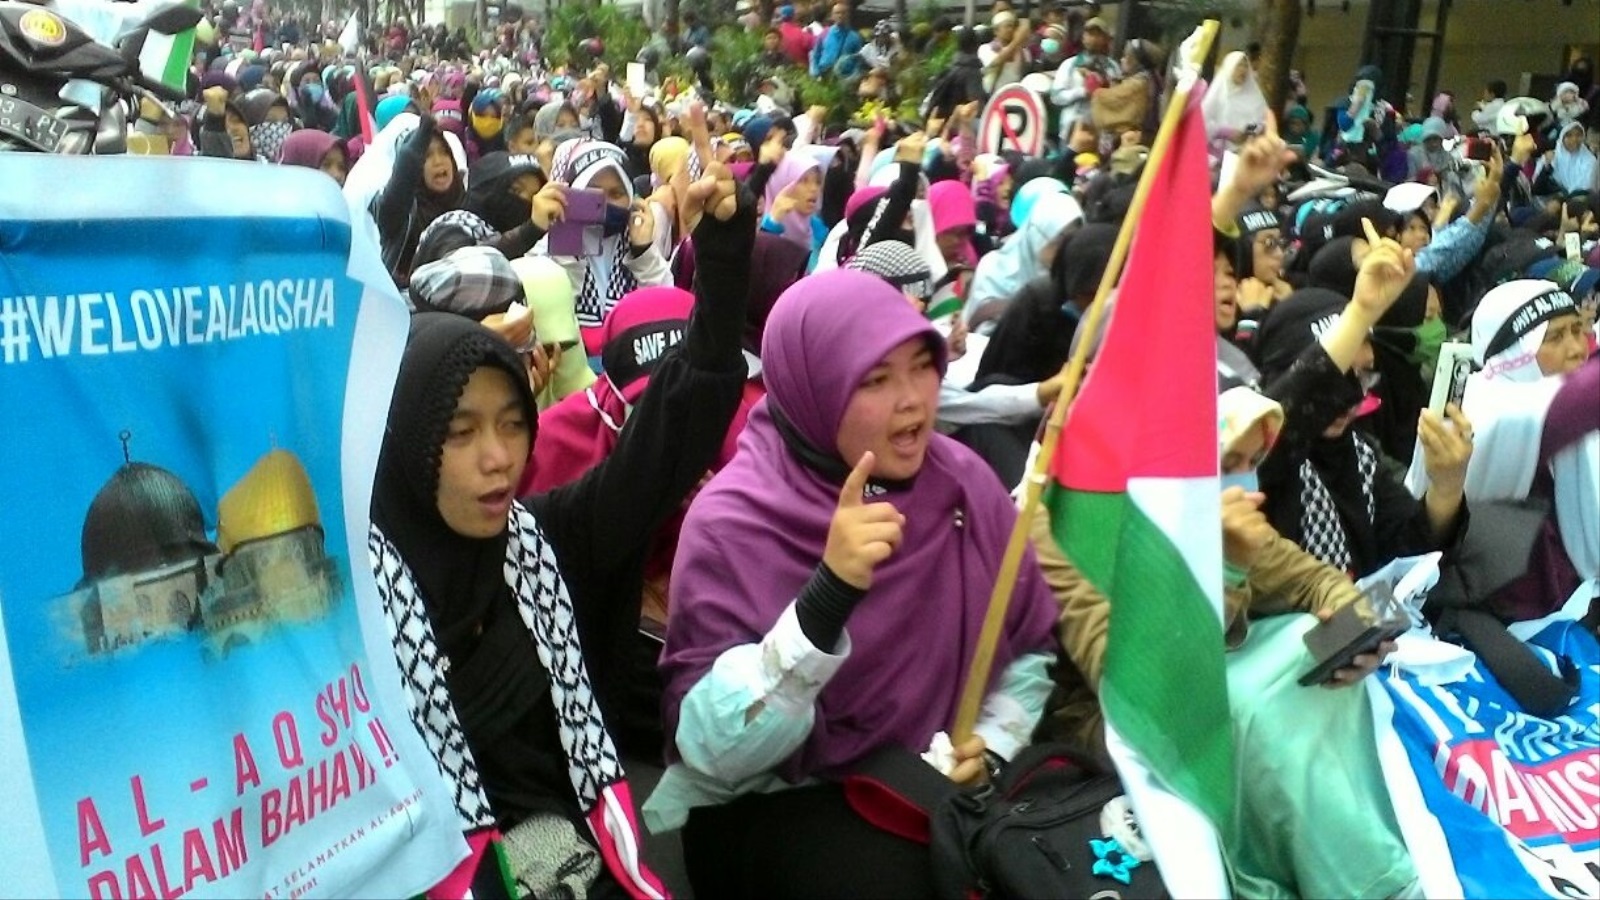 مظاهرة حاشدة شاركت فيها النساء في إندونيسيا تضامنا مع الأقصى (الجزيرة)